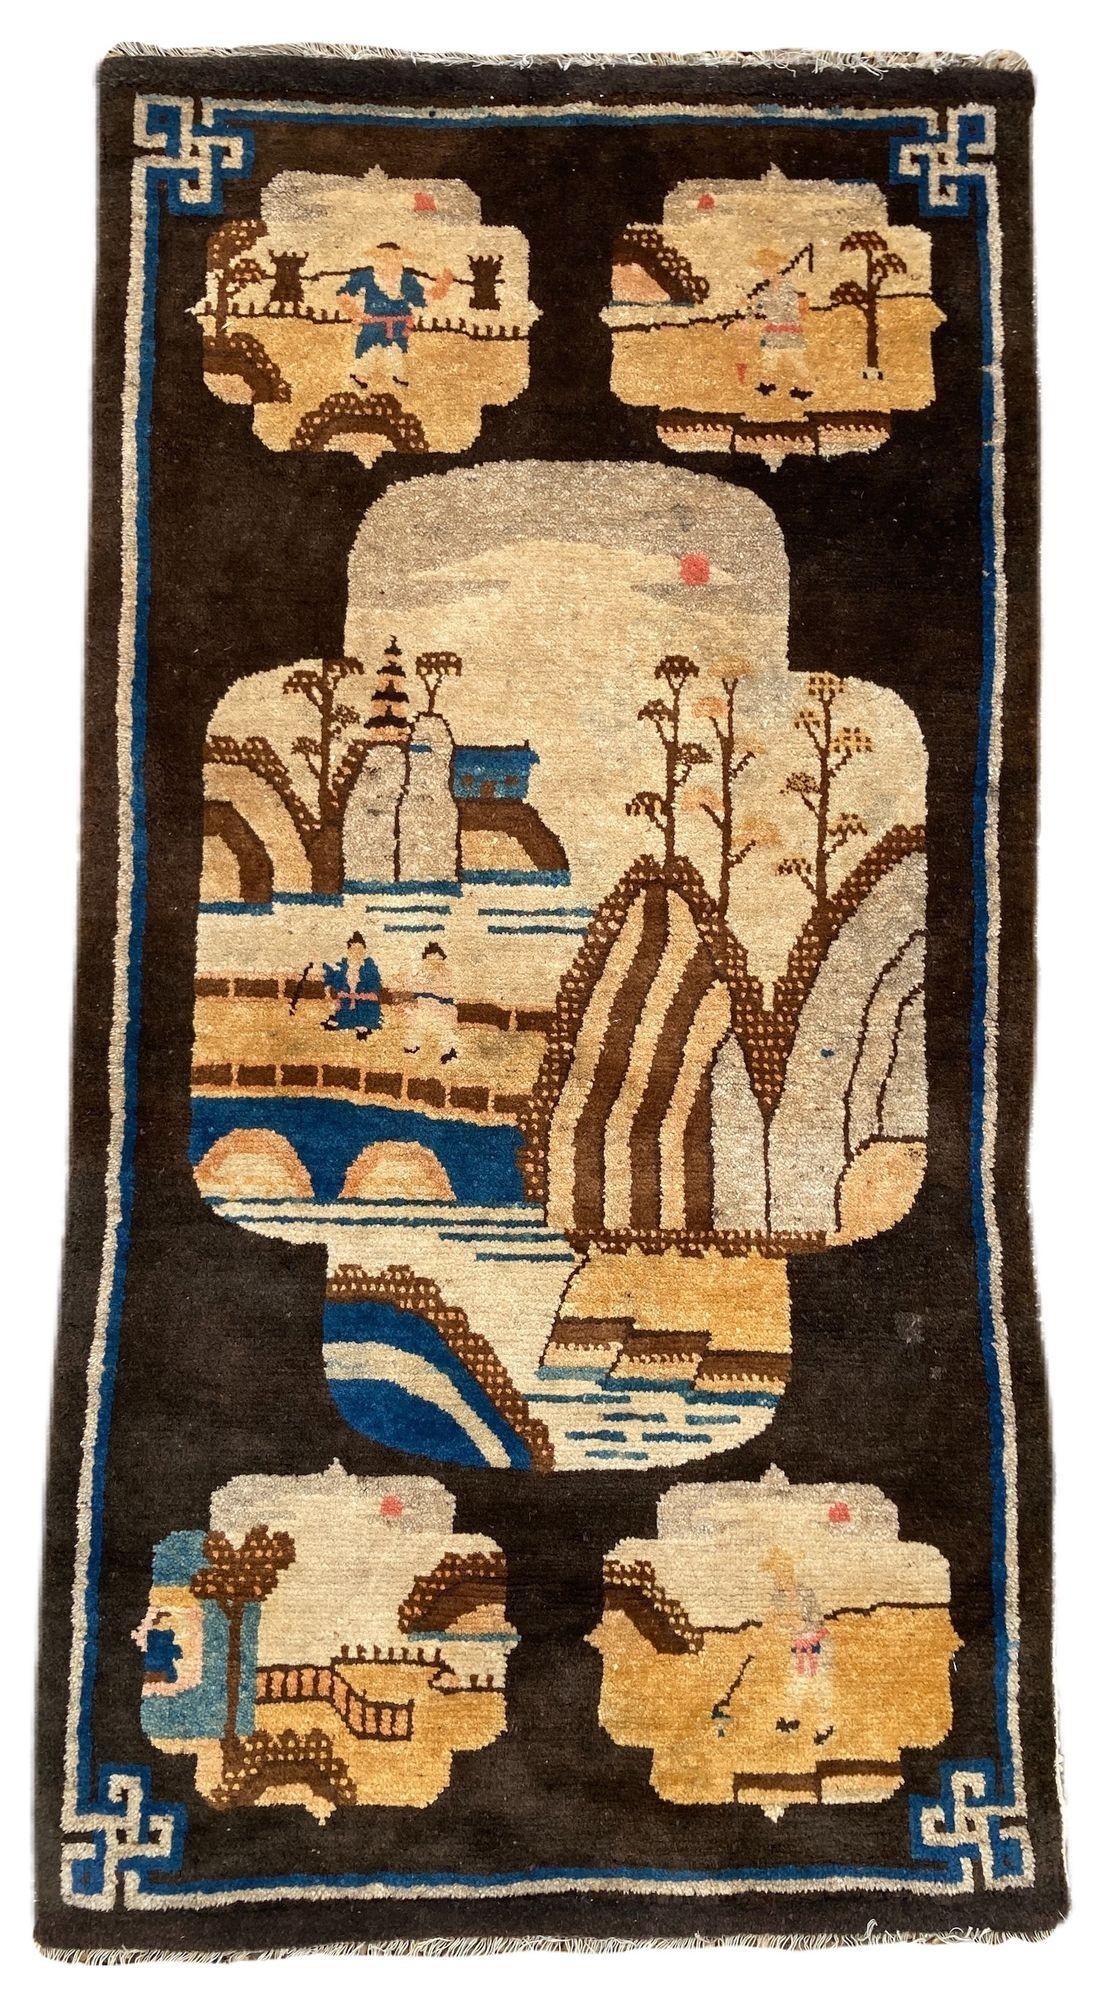 Ein schöner Pao-Tao-Teppich, handgewebt in China um 1940, mit einem traditionellen Fenstermuster, das fünf landwirtschaftliche Szenen auf einem schokoladenbraunen Feld und einer einfachen Bordüre zeigt.
Größe: 1,23m x 0,64m (4ft x 2ft 1in)
Dieser